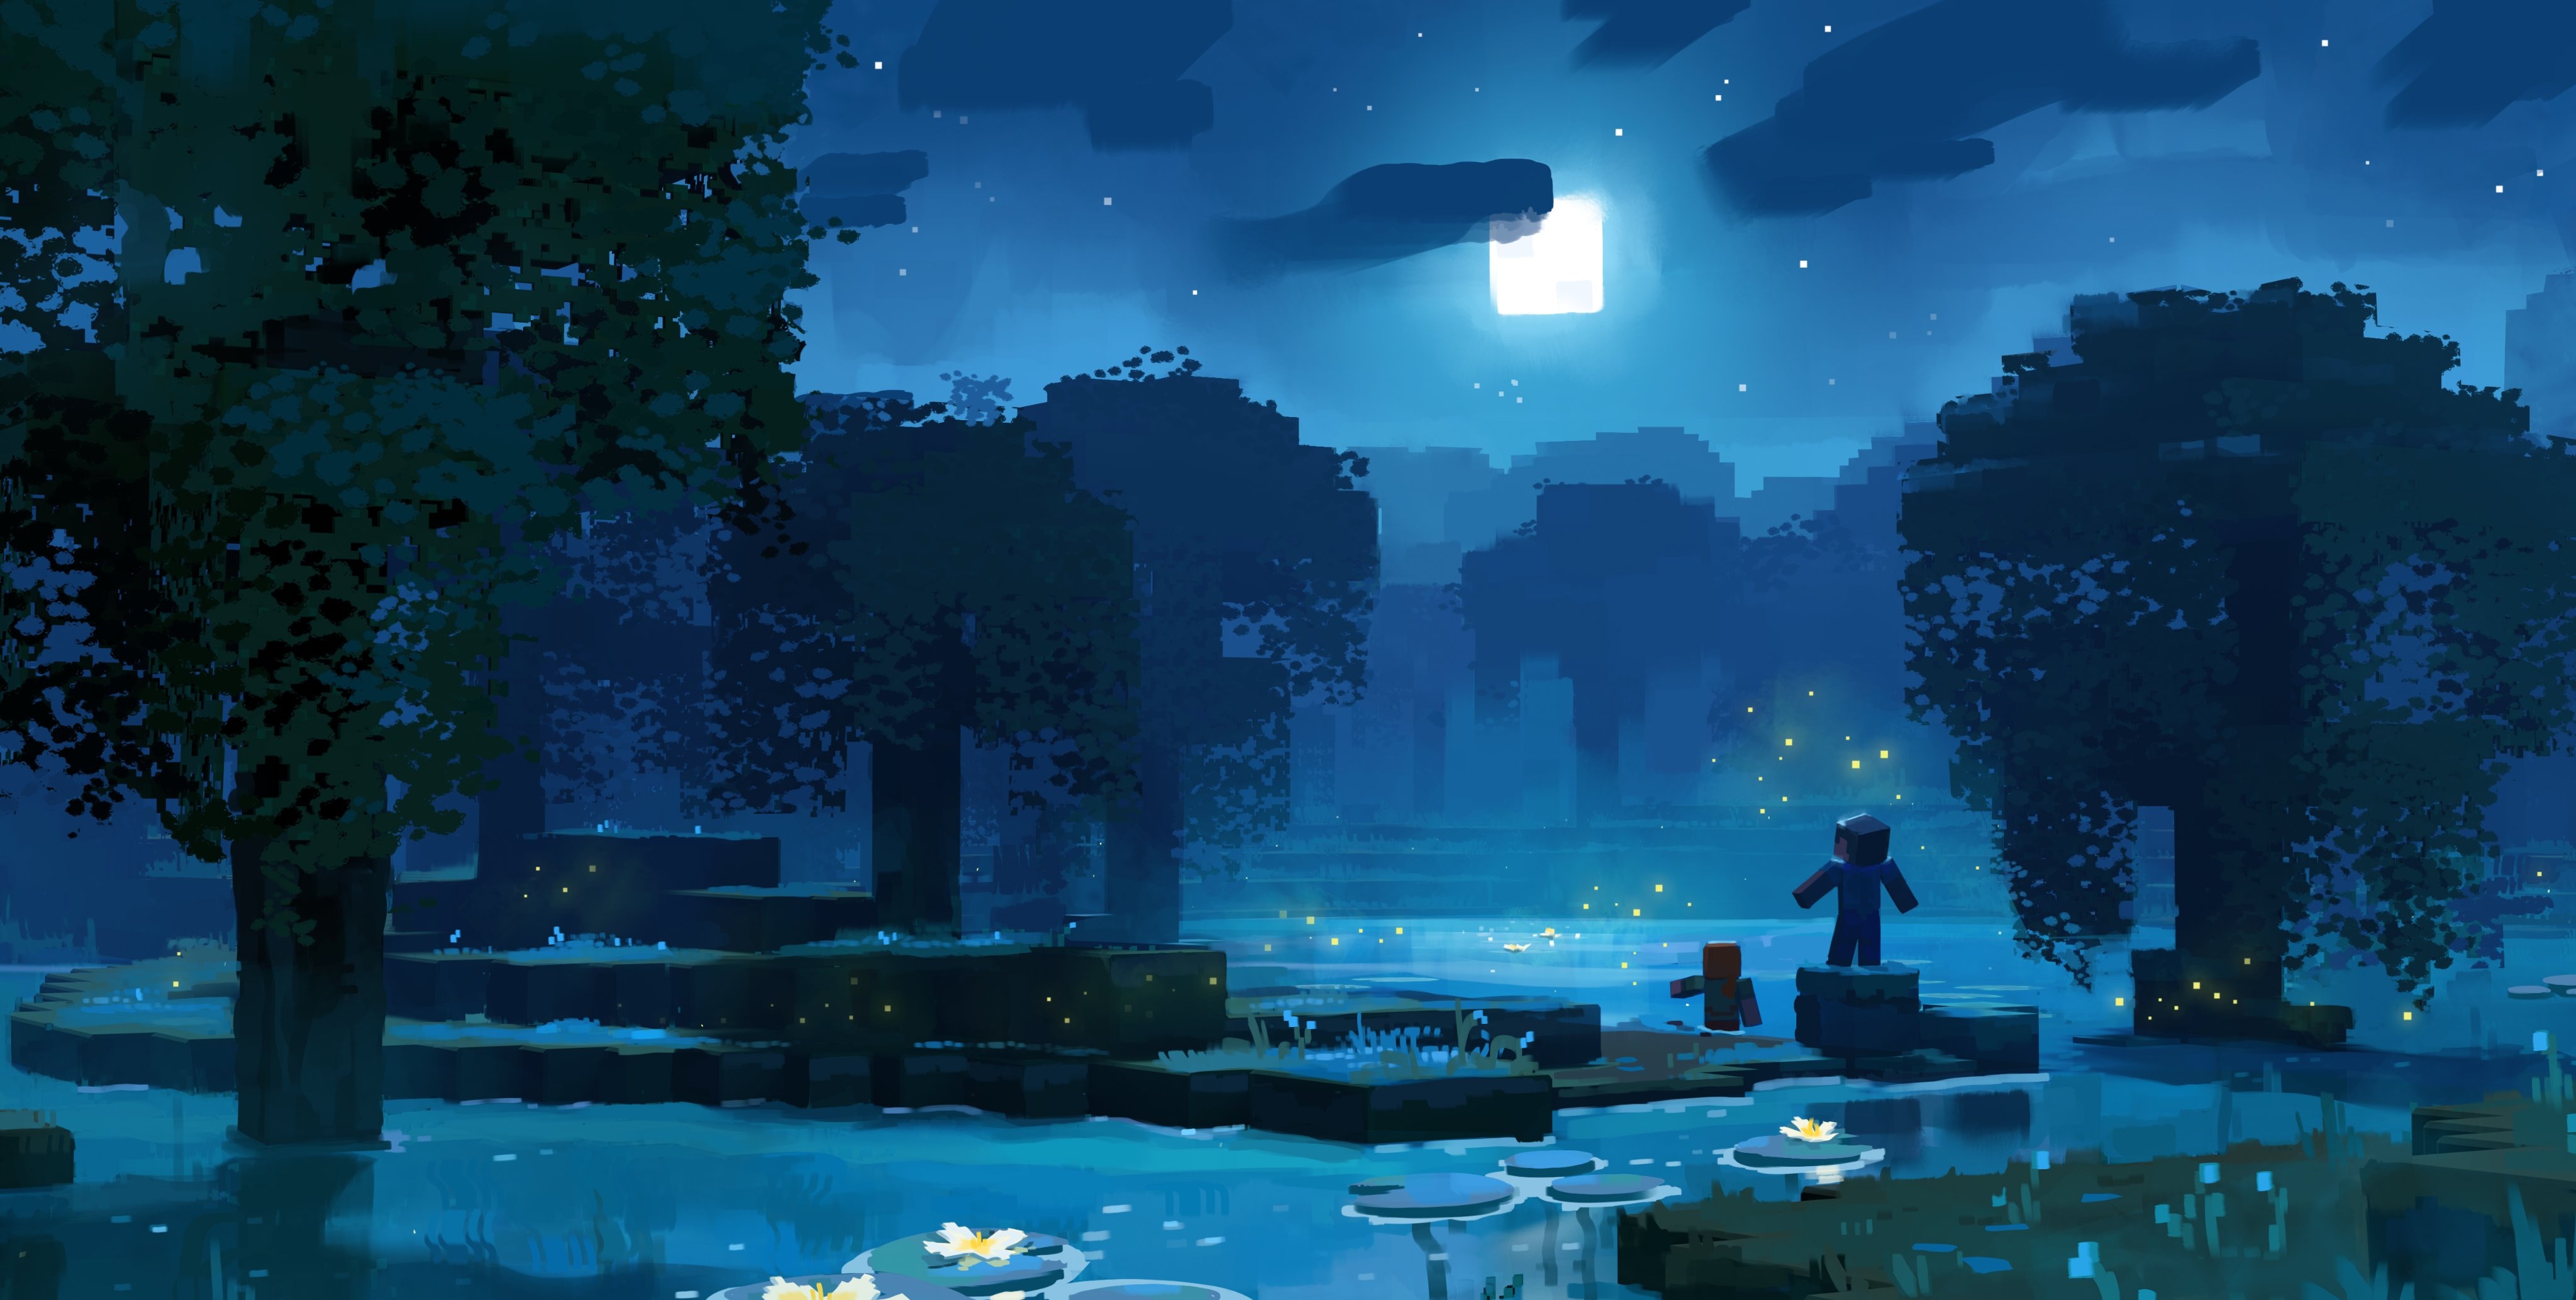 Bạn sẽ không thể bỏ lỡ bức ảnh Minecraft với bối cảnh Đầm Lầy đầy bí ẩn vào buổi tối. Với sự kết hợp hoàn hảo giữa ánh sáng và bóng tối, hứa hẹn sẽ đưa bạn tới một thế giới kì lạ và thú vị.